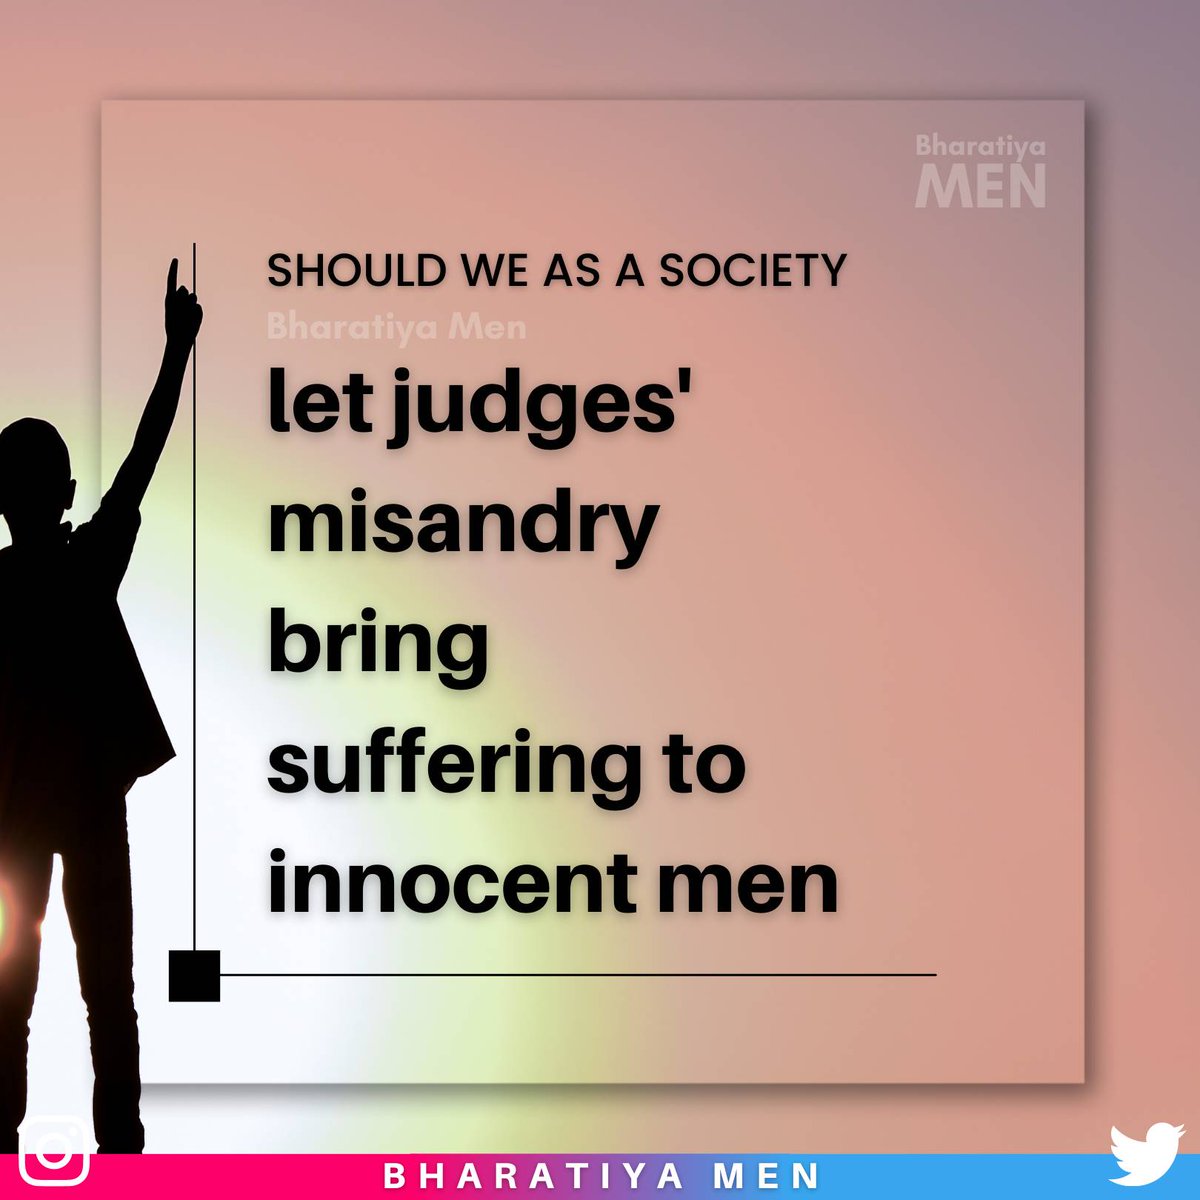 #JudicialMisandry #SexistJudiciary #NotMyCJI #LegalTerrorism #Men #MenRightsAreHumanRights #Feminism #PinkTerrorism